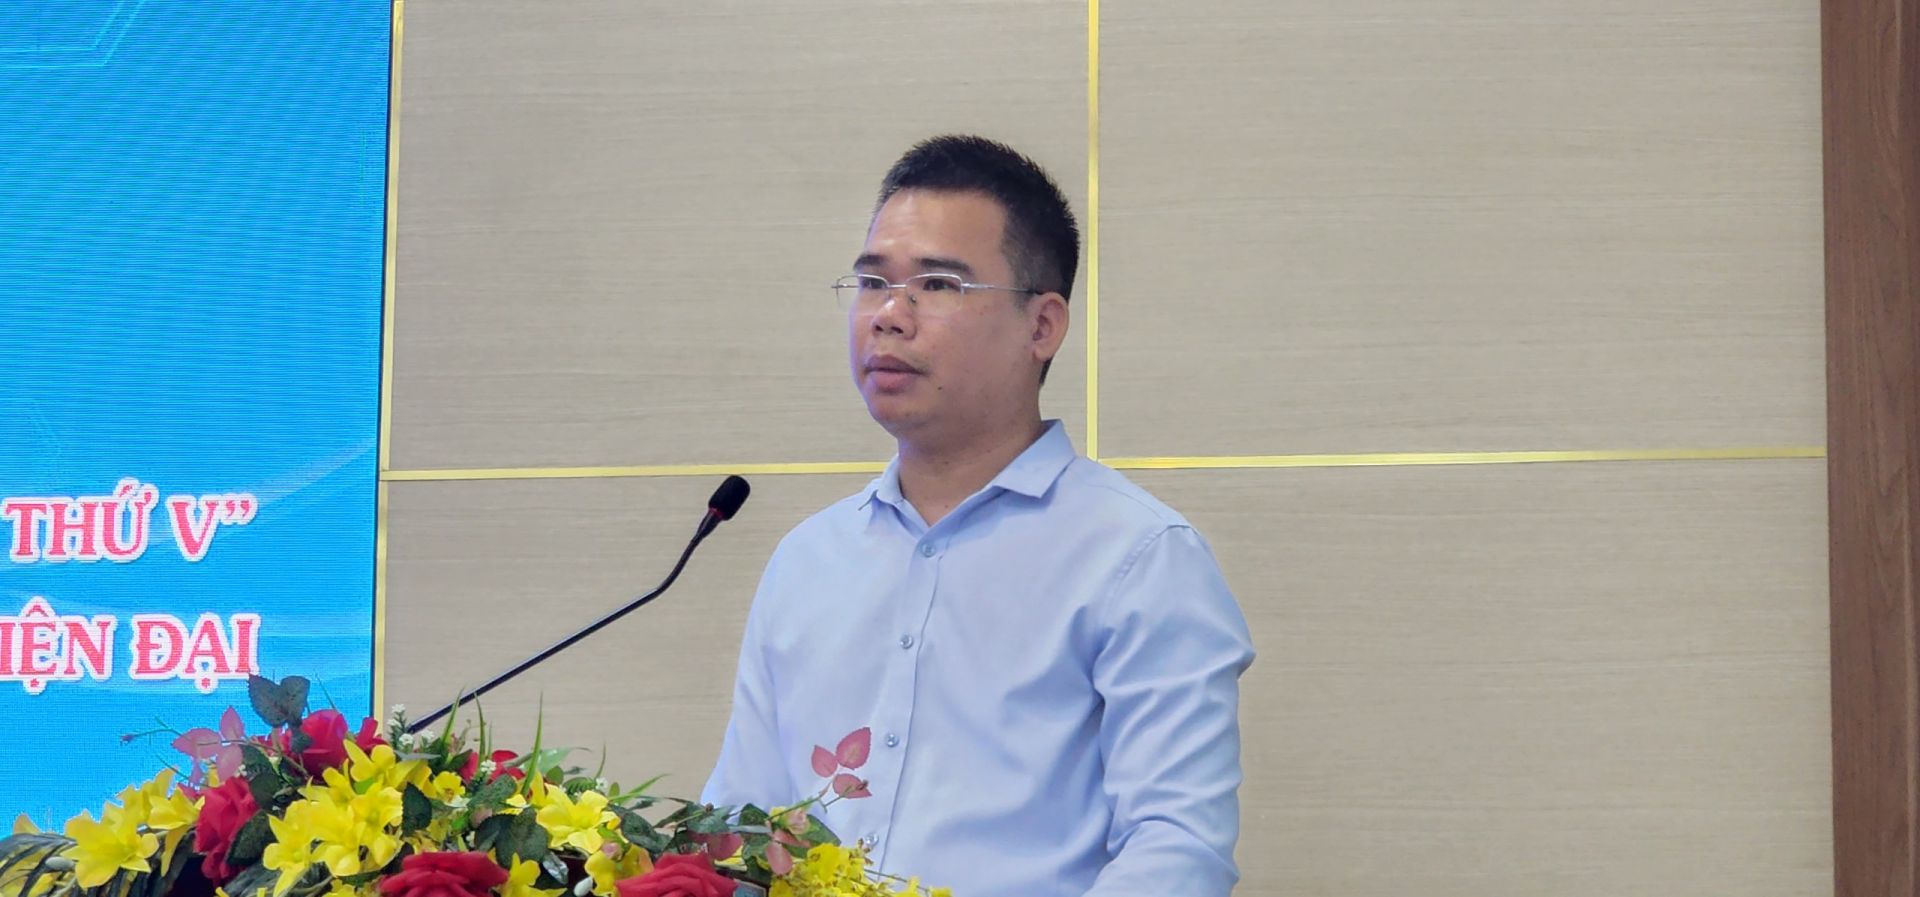 Lương Quang Phú, Phó Trưởng Phòng Báo chí - Xuất bản, Sở Thông tin & truyền thông thành phố phát biểu ý kiến